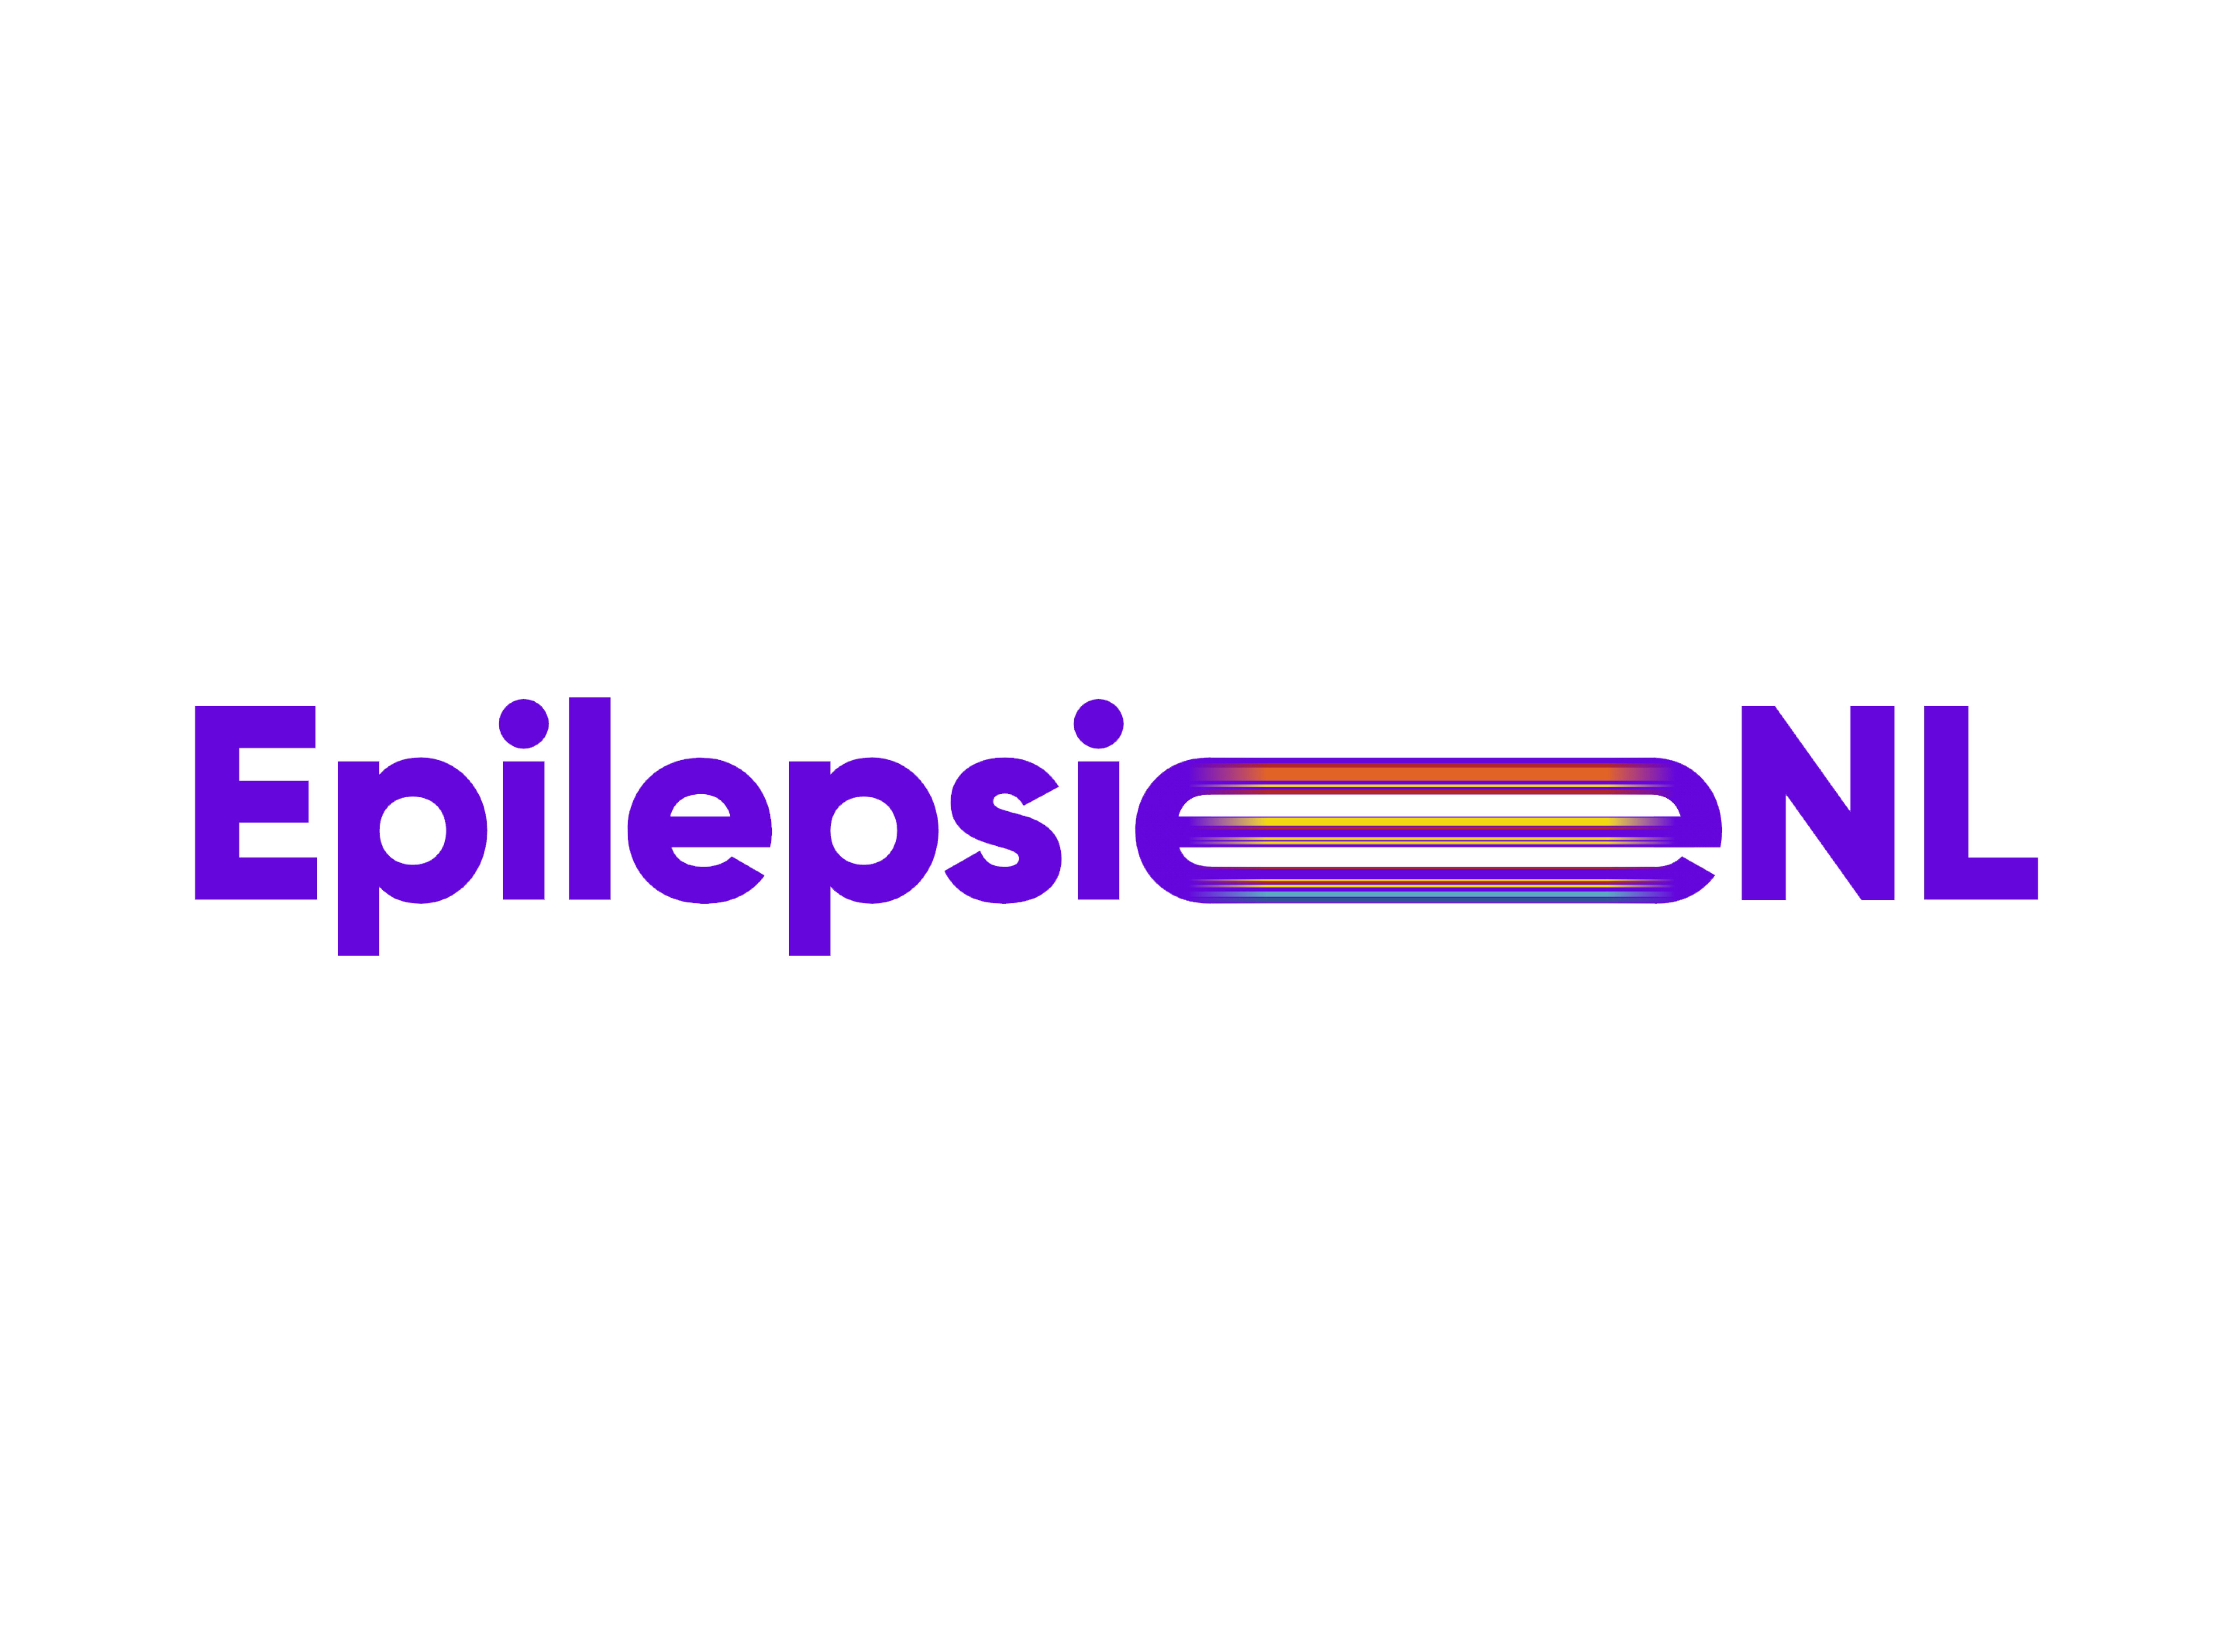 epilepsie1 v2